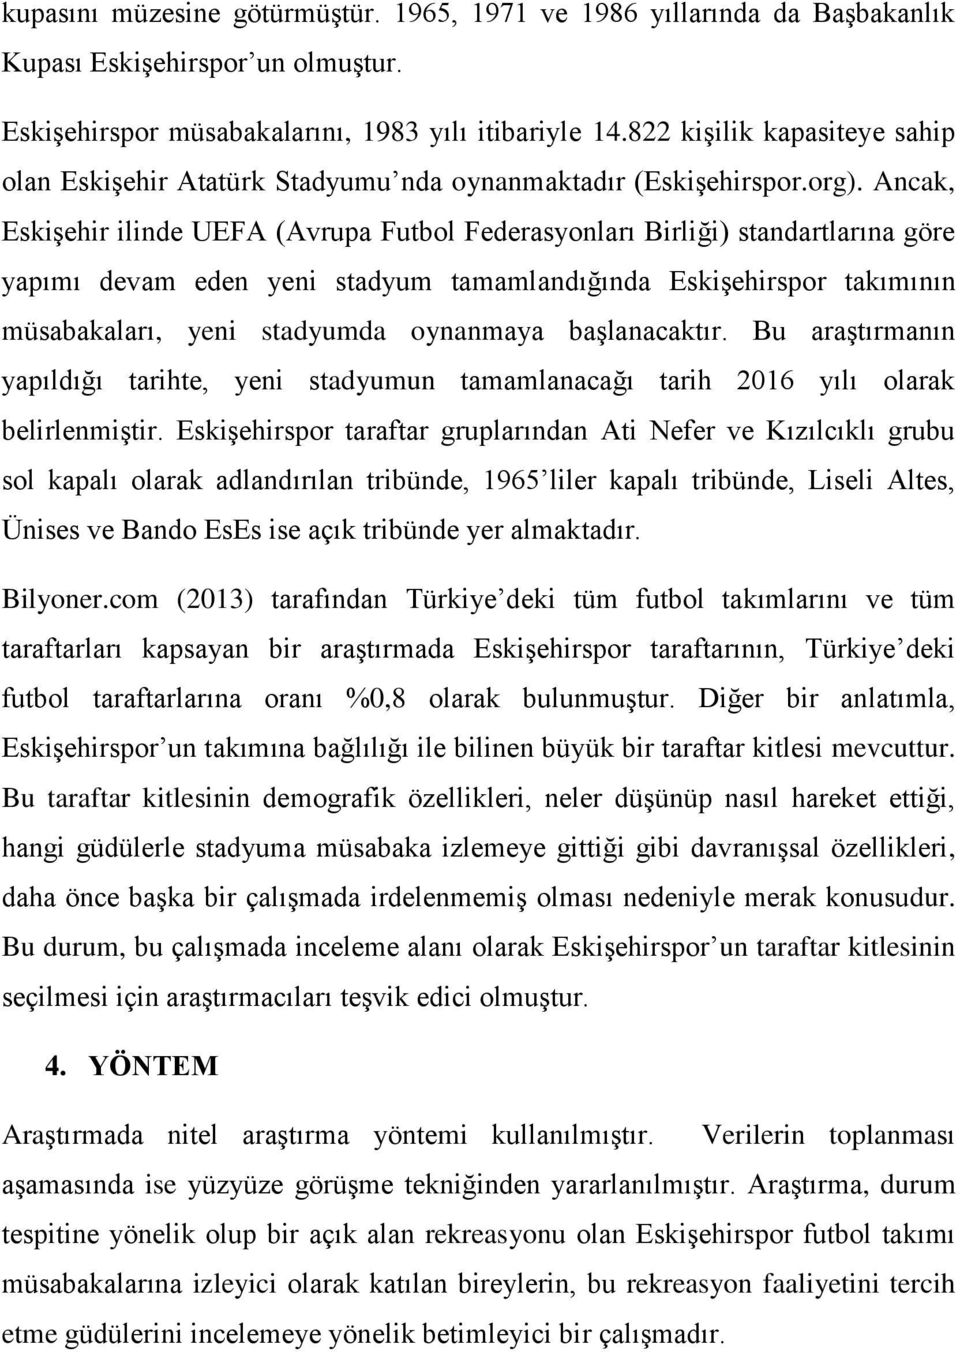 Ancak, Eskişehir ilinde UEFA (Avrupa Futbol Federasyonları Birliği) standartlarına göre yapımı devam eden yeni stadyum tamamlandığında Eskişehirspor takımının müsabakaları, yeni stadyumda oynanmaya